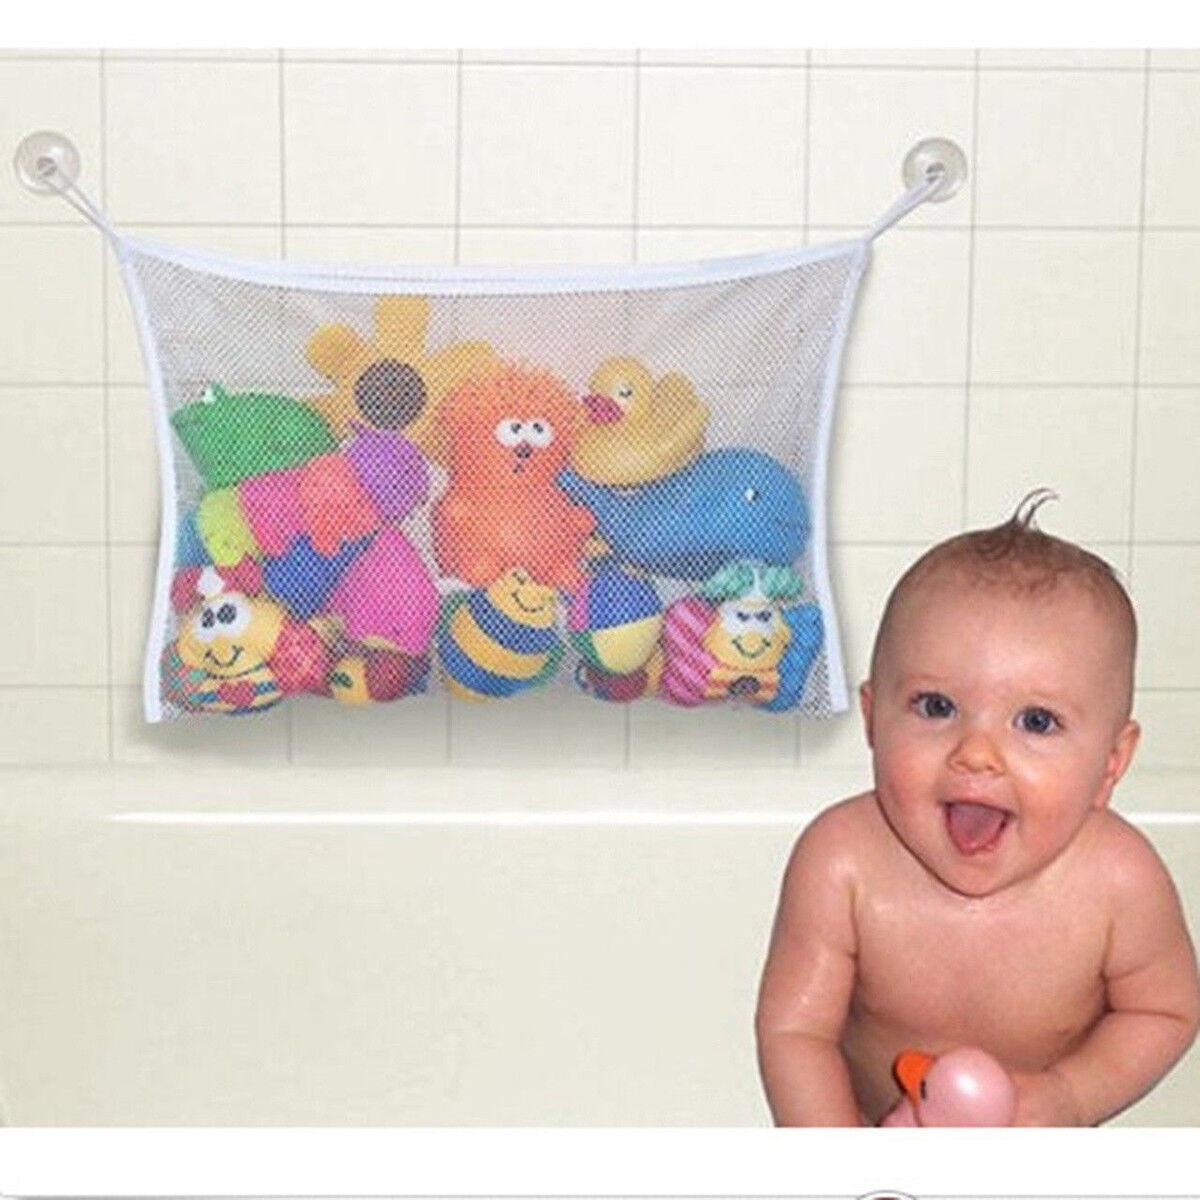 Fashion Baby Bath Bathtub Toy Mesh Net Storage Bag Organizer Holder Bathroom Unbranded Does Not Apply - фотография #2